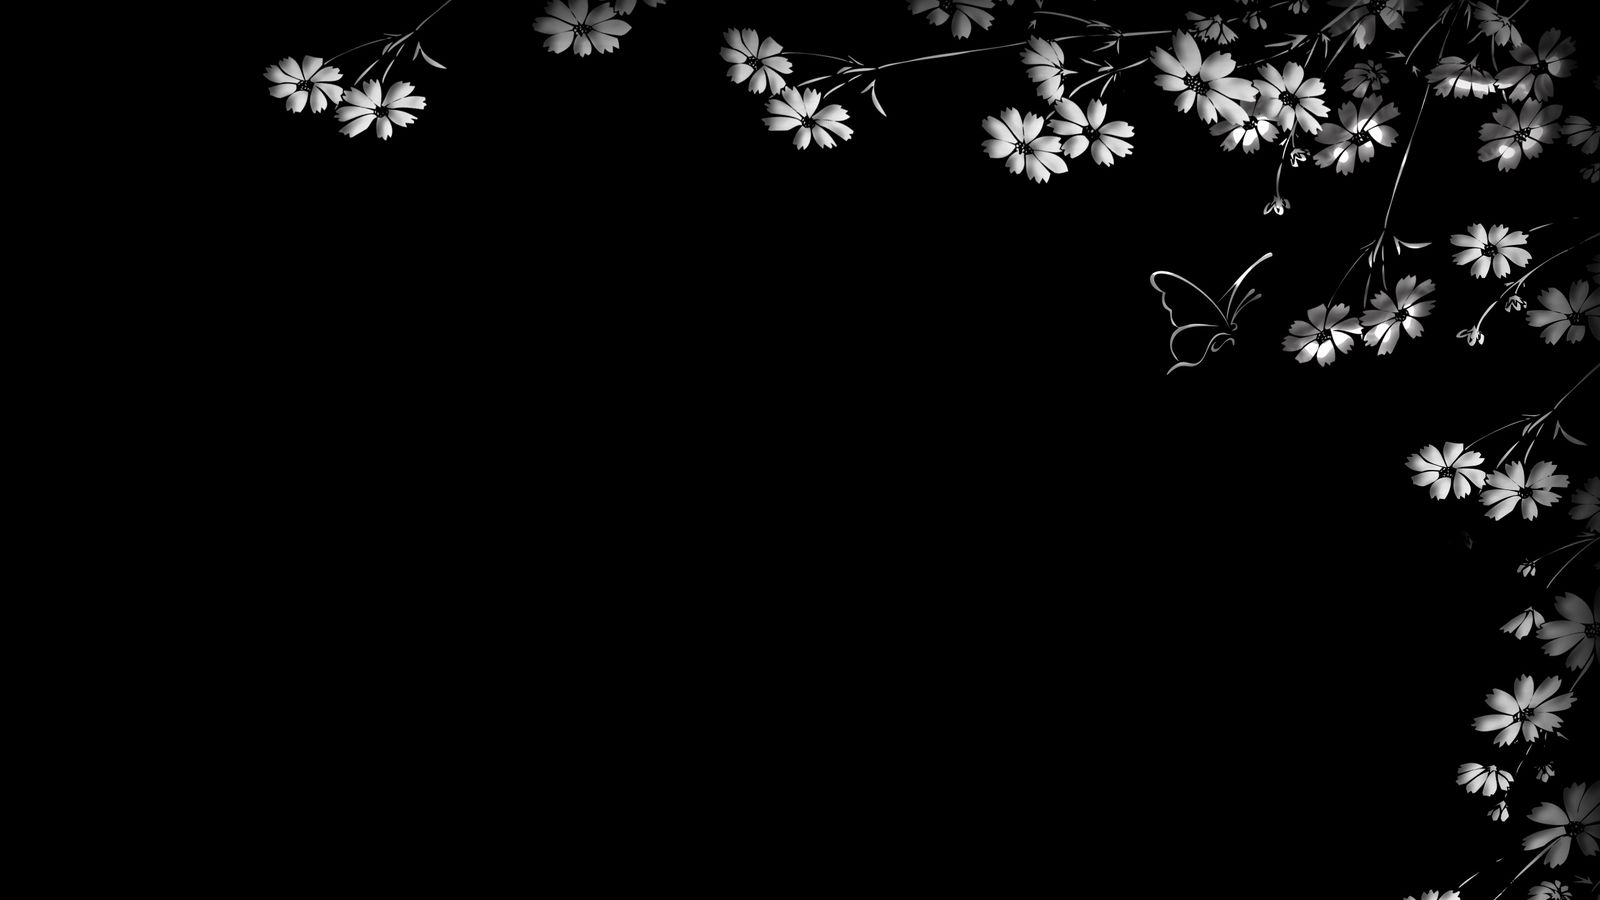 Hình nền bướm, hoa, nền đen: Thư giãn với hình nền bướm và hoa trên nền đen lịch lãm. Sự hòa quyện tuyệt vời giữa các chi tiết nổi bật và màu nền đen đầy lôi cuốn sẽ mang đến cho bạn chuyến du hành hoàn toàn mới trên màn hình của bạn.